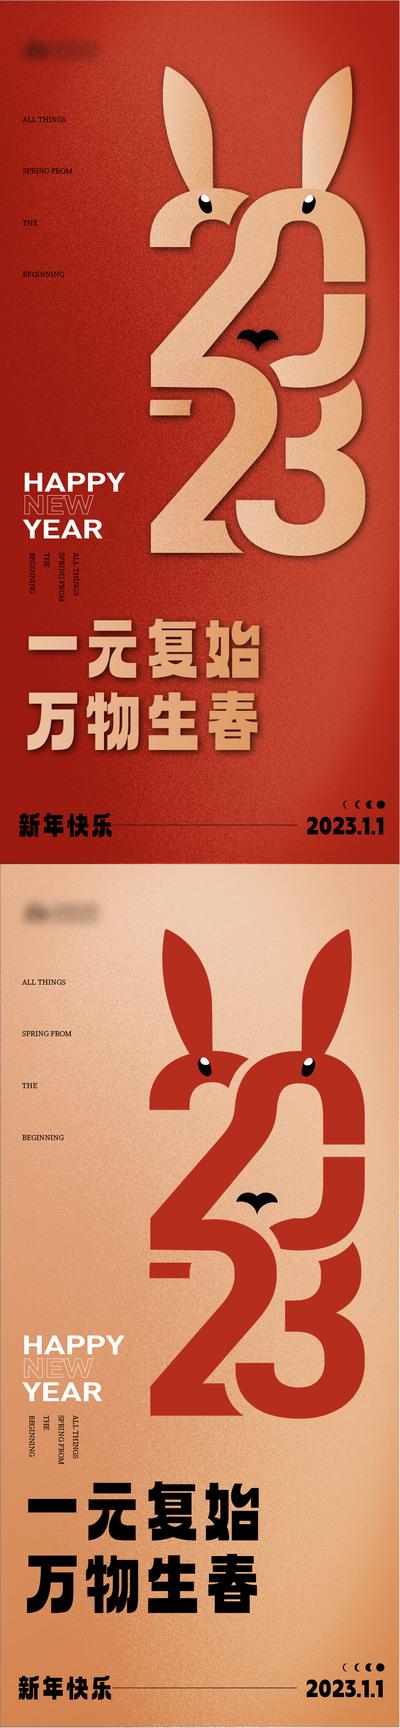 南门网 海报 公历节日 元旦节 2023 兔年 新年 数字 创意 